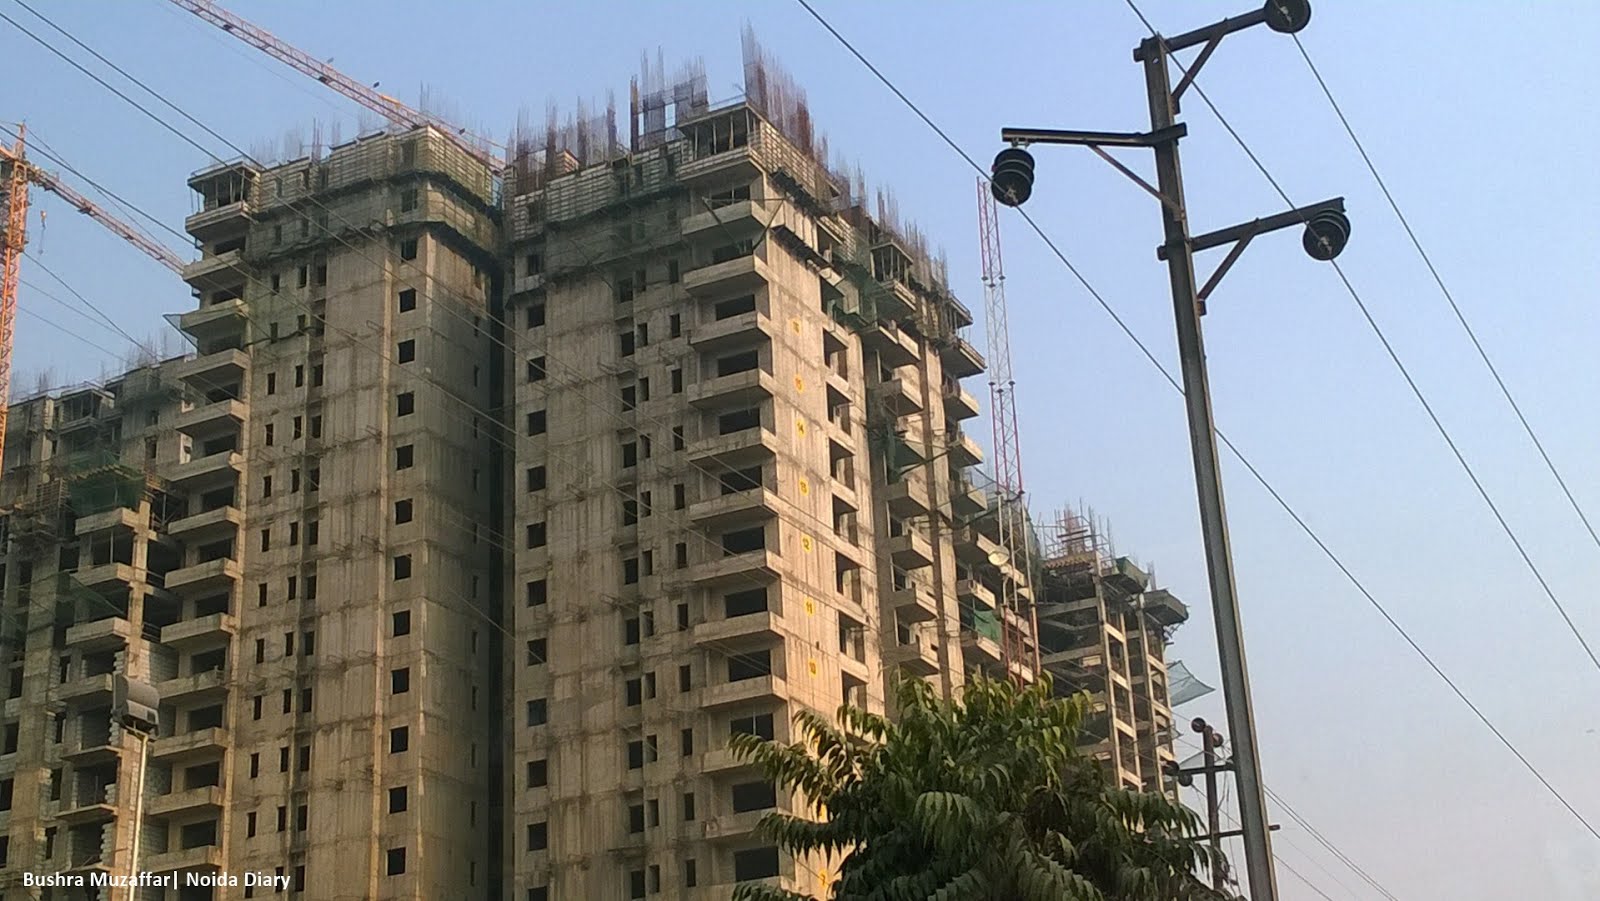 Noida Diary: Noida a Hub of Construction Activity